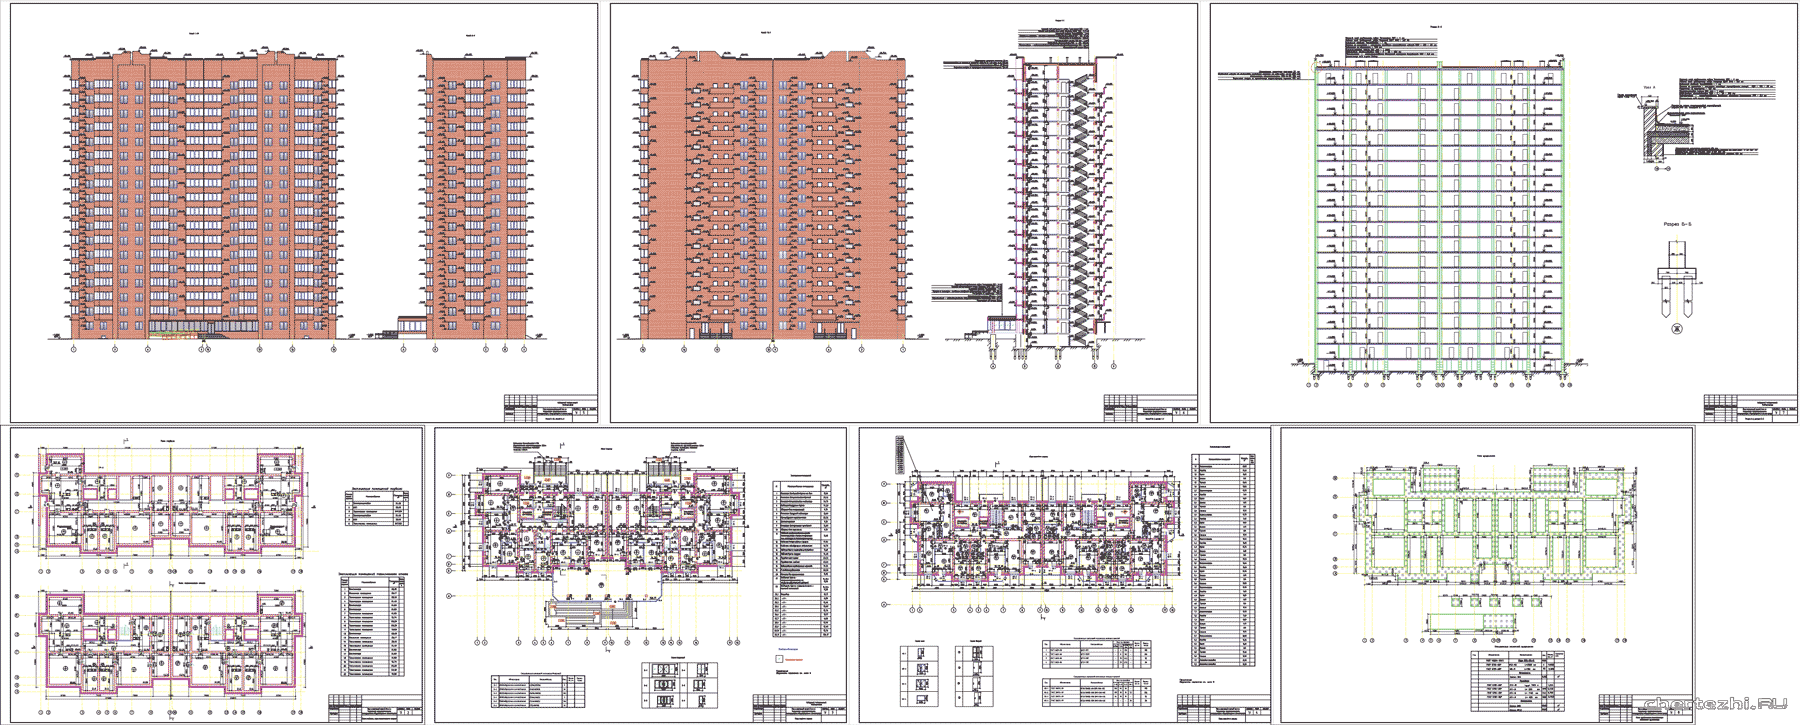 Курсовой проект - Проект капитального строительства 2-х секционного 19 этажного 136-квартирного жилого дома с поликлиникой на первом этаже г. Омск